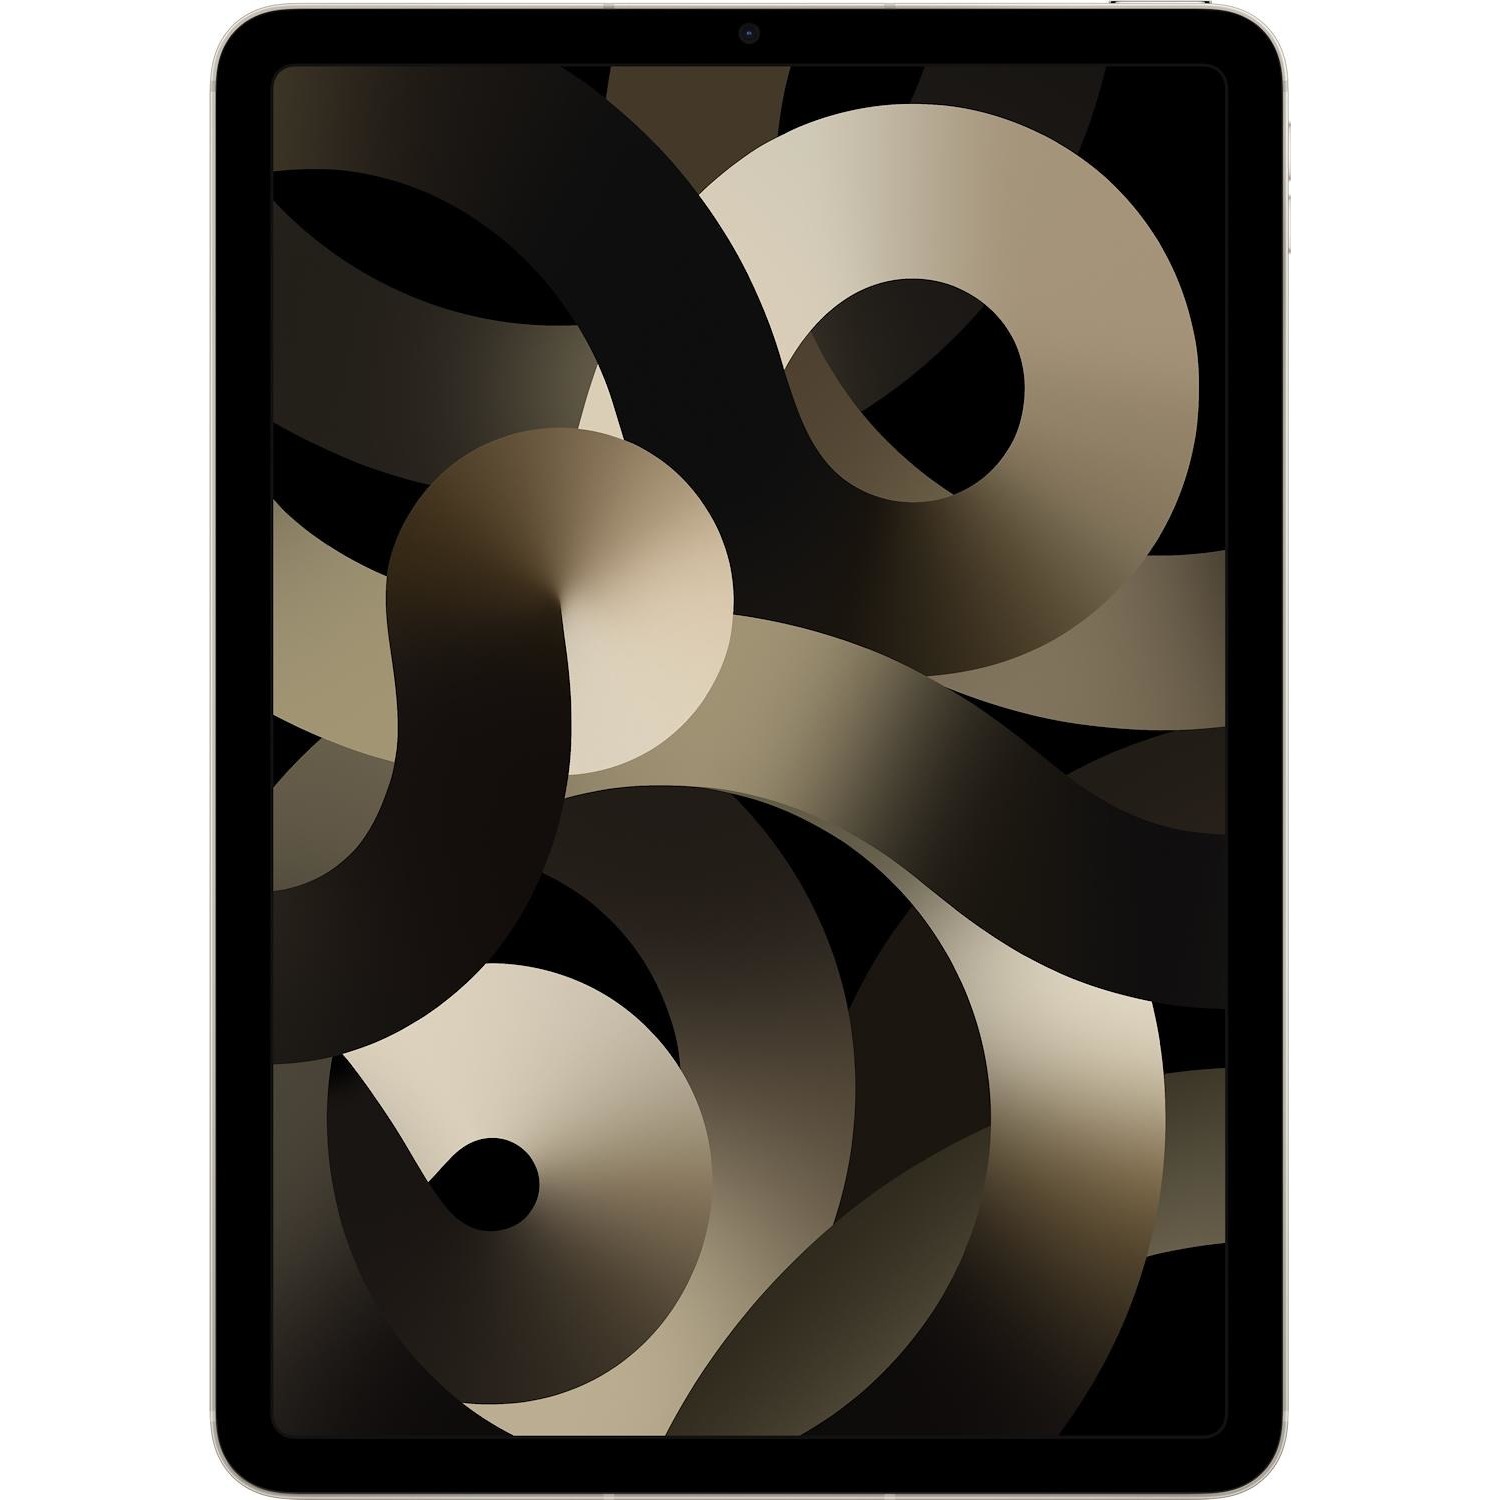 Immagine per iPad Air Apple Wi-Fi cellular 256GB bianco brillante da DIMOStore